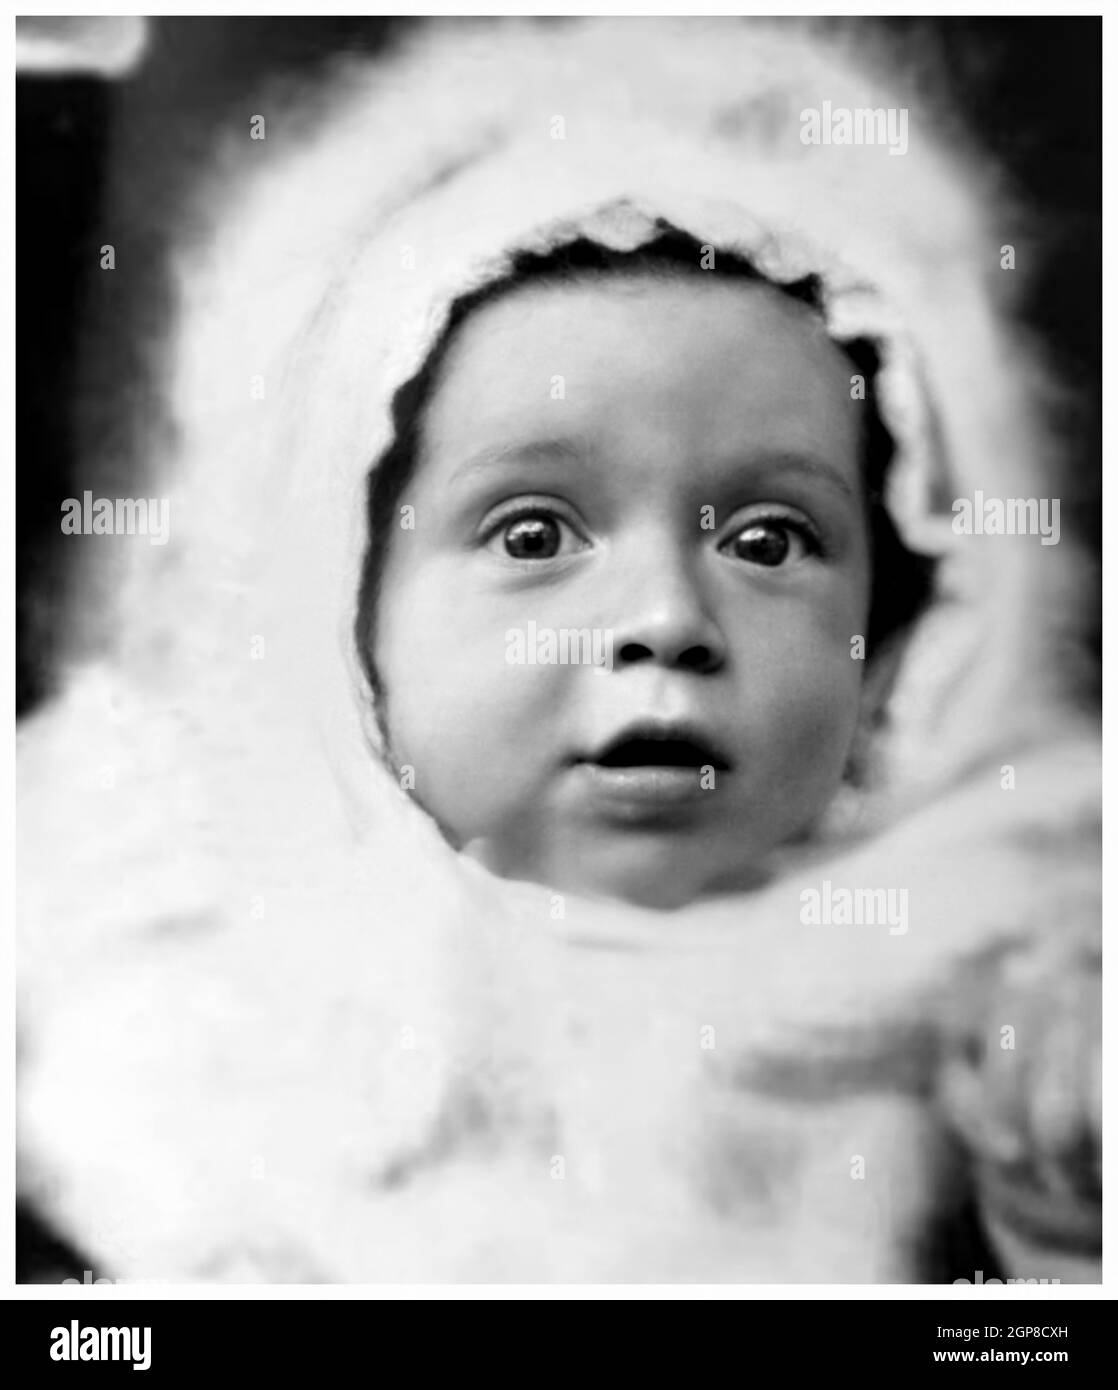 1940, dezember, NEW YORK, USA: Der gefeierte amerikanische Schauspieler AL PACINO ( geboren am 25. april 1940), als ein junges Baby im Alter von nur 8 Monaten war. Unbekannter Fotograf .- GESCHICHTE - FOTO STORICHE - ATTORE - FILM - KINO - personalità da bambino Bambini da giovane - Persönlichkeit Persönlichkeiten, als jung war - INFANZIA - KINDHEIT - BAMBINO - BAMBINI - KINDER - KIND - ATTORE - PORTRAIT - RITRATTO - GESCHICHTE - FOTO STORICHE -- - ARCHIVIO GBB Stockfoto